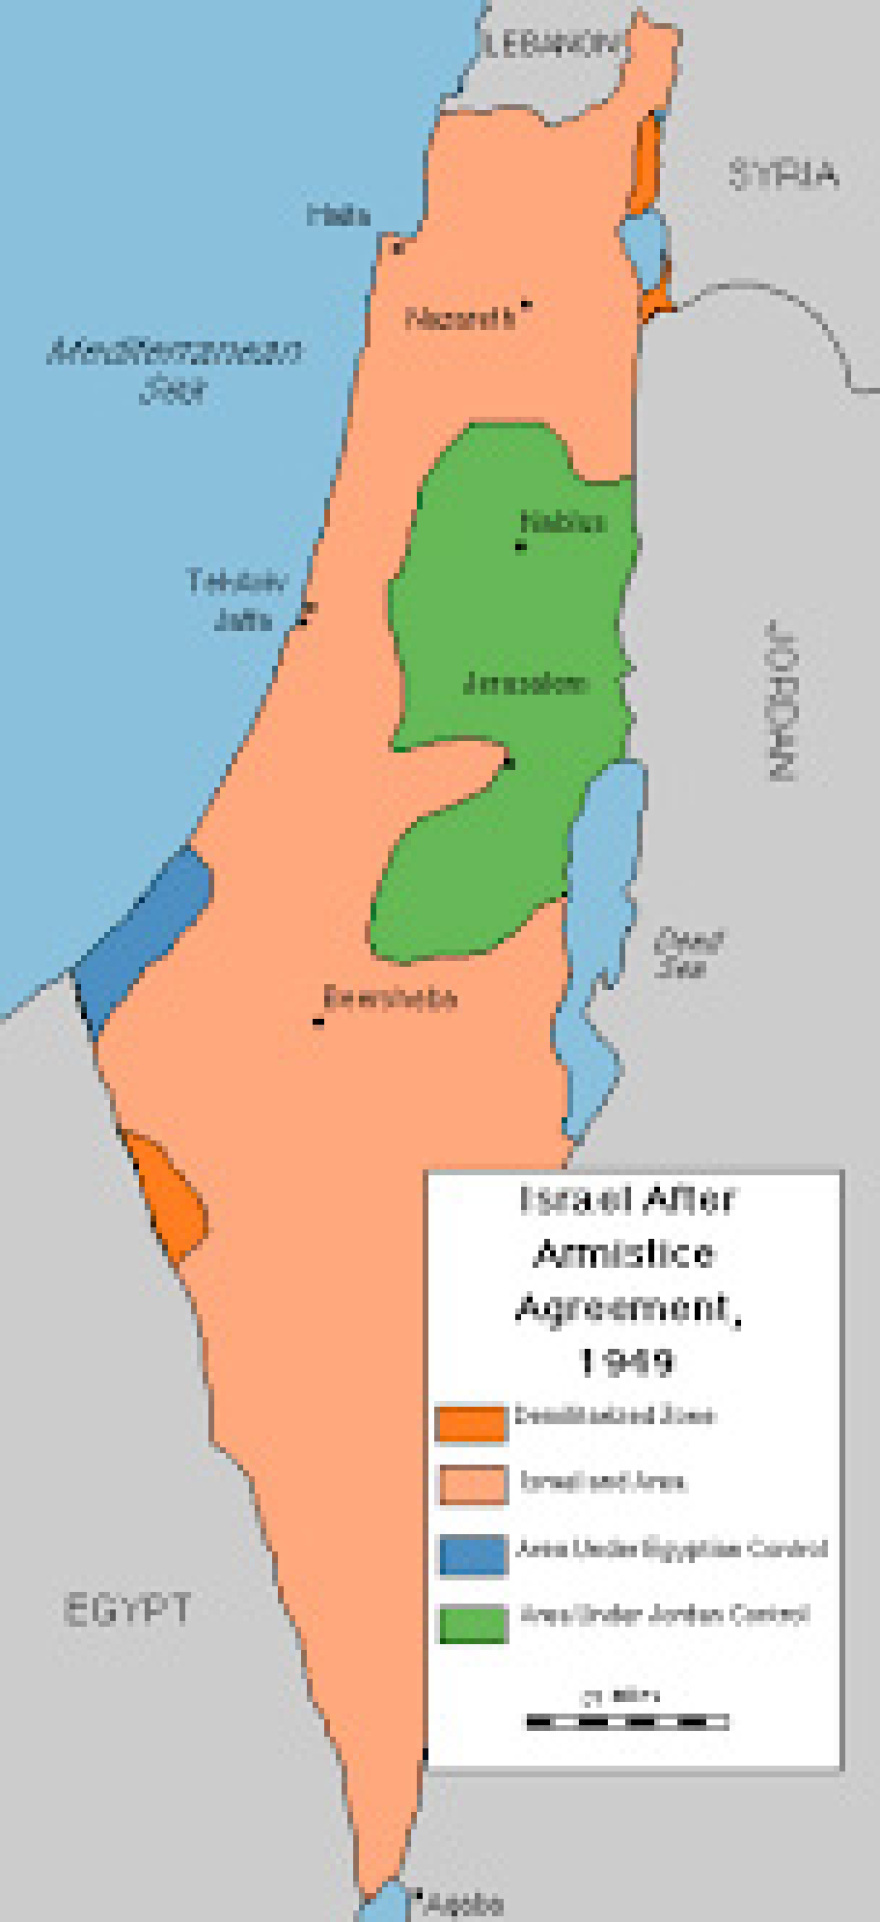 Χαρτης-του-Ισραηλ-μετα-τις-συμφωνιες-του-1949